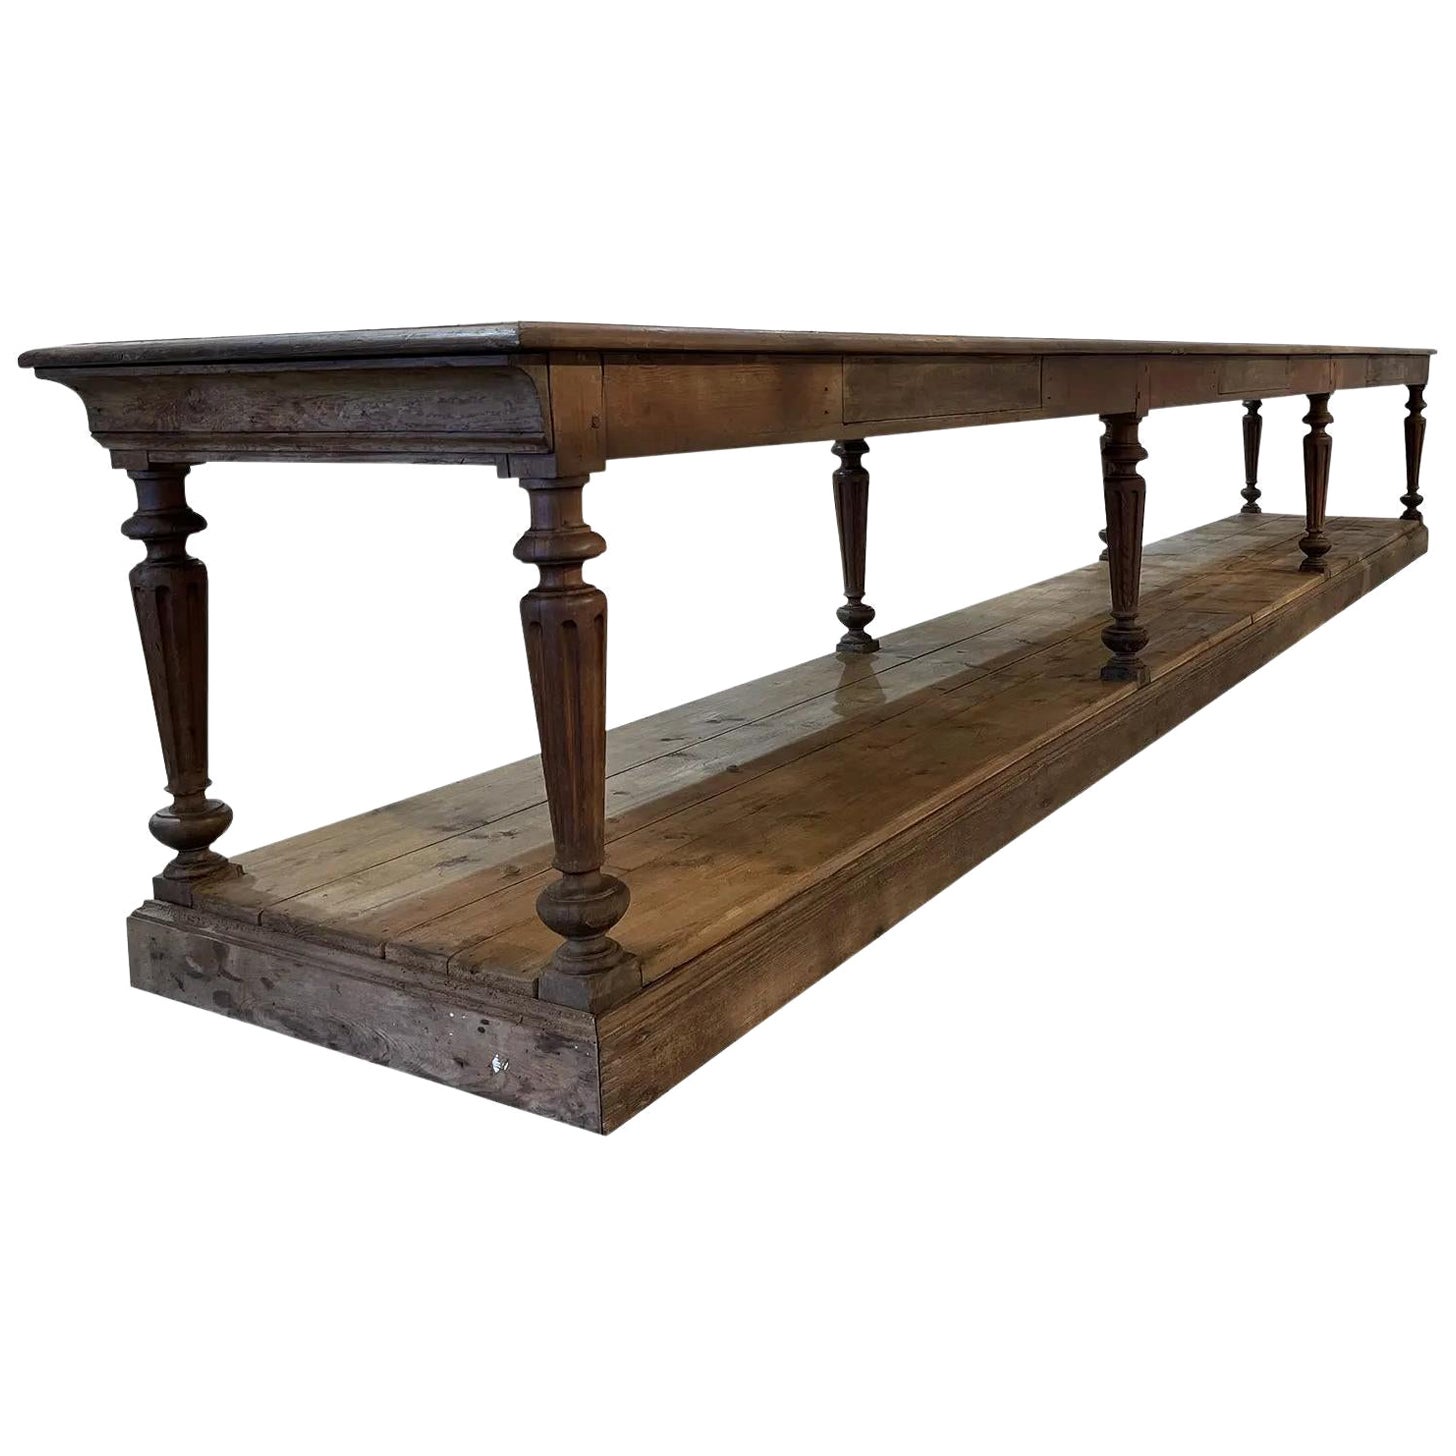 Table de tailleur monumentale en chêne ancien français du 19e siècle, de couleur brun foncé